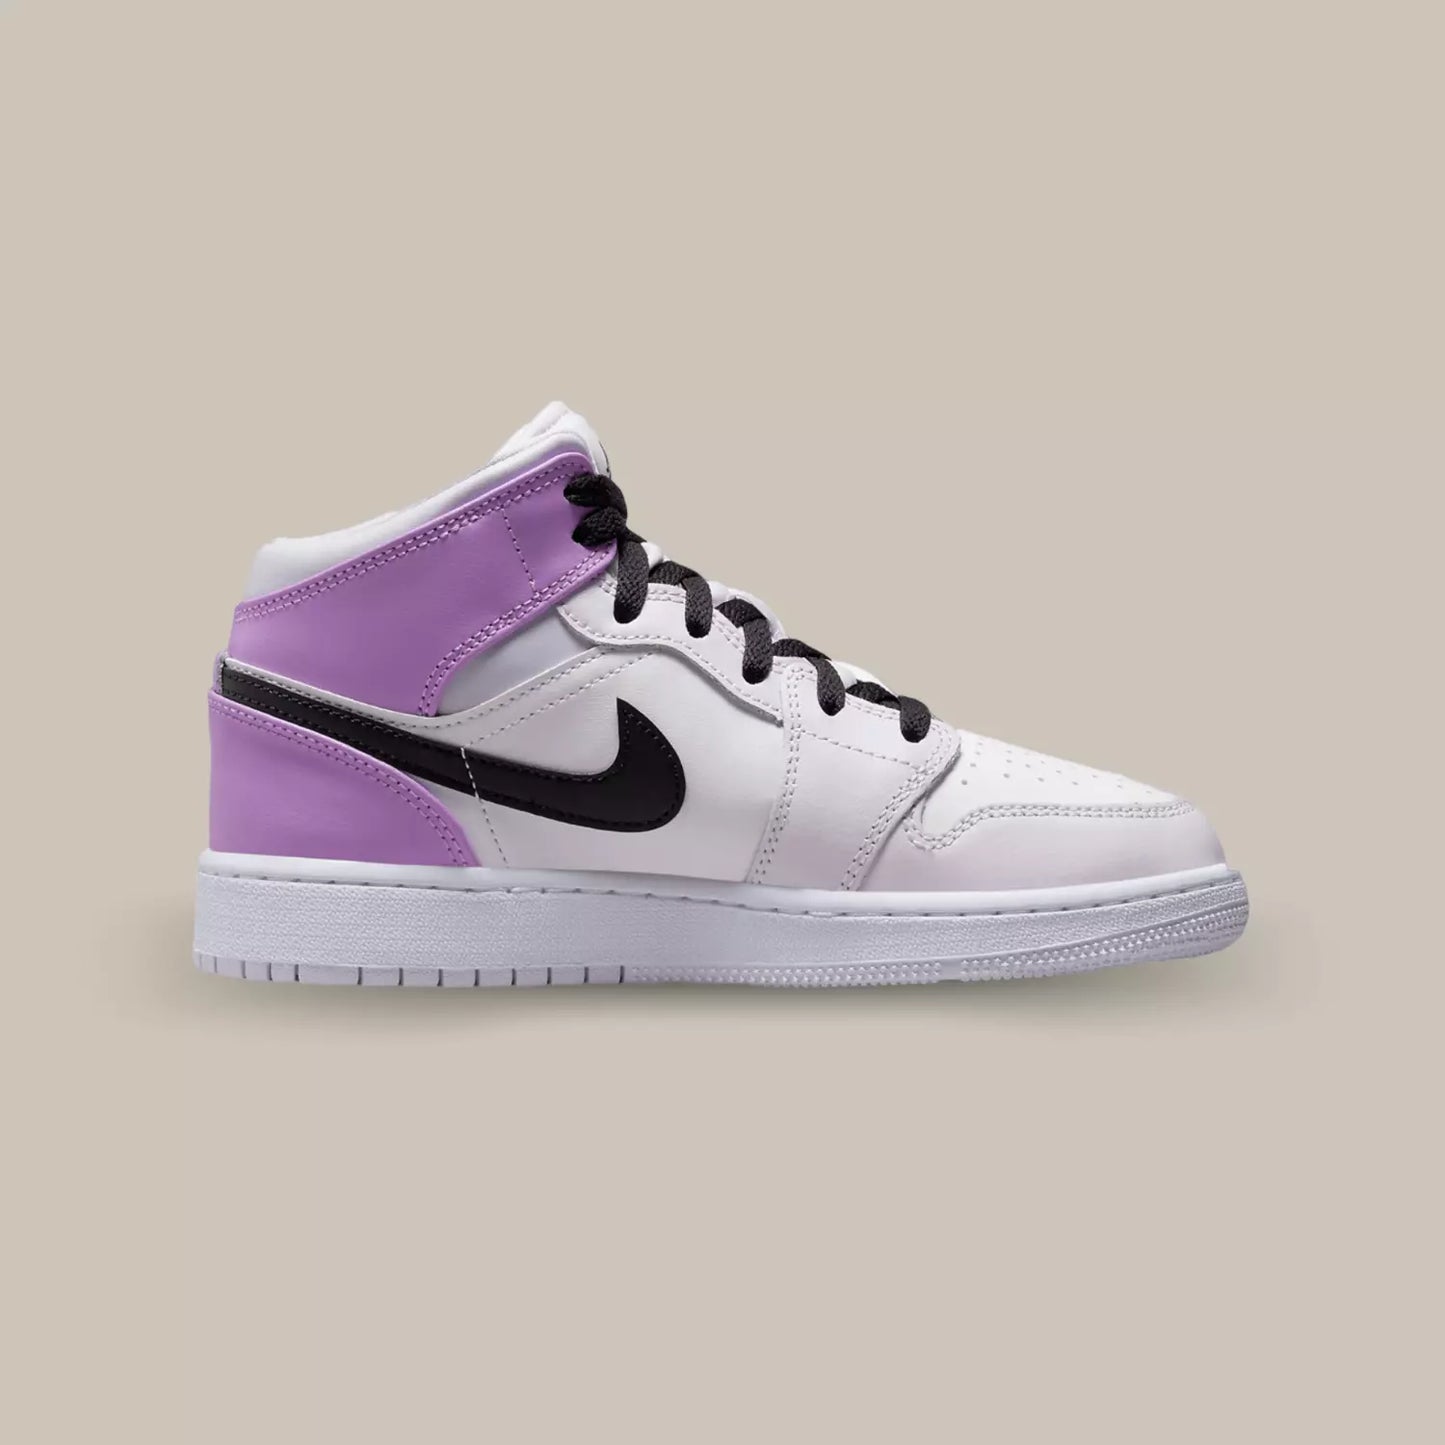 La Air Jordan 1 Mid "Barely Grape" de coté avec sa base blanc rosé et le talon de couleur violet